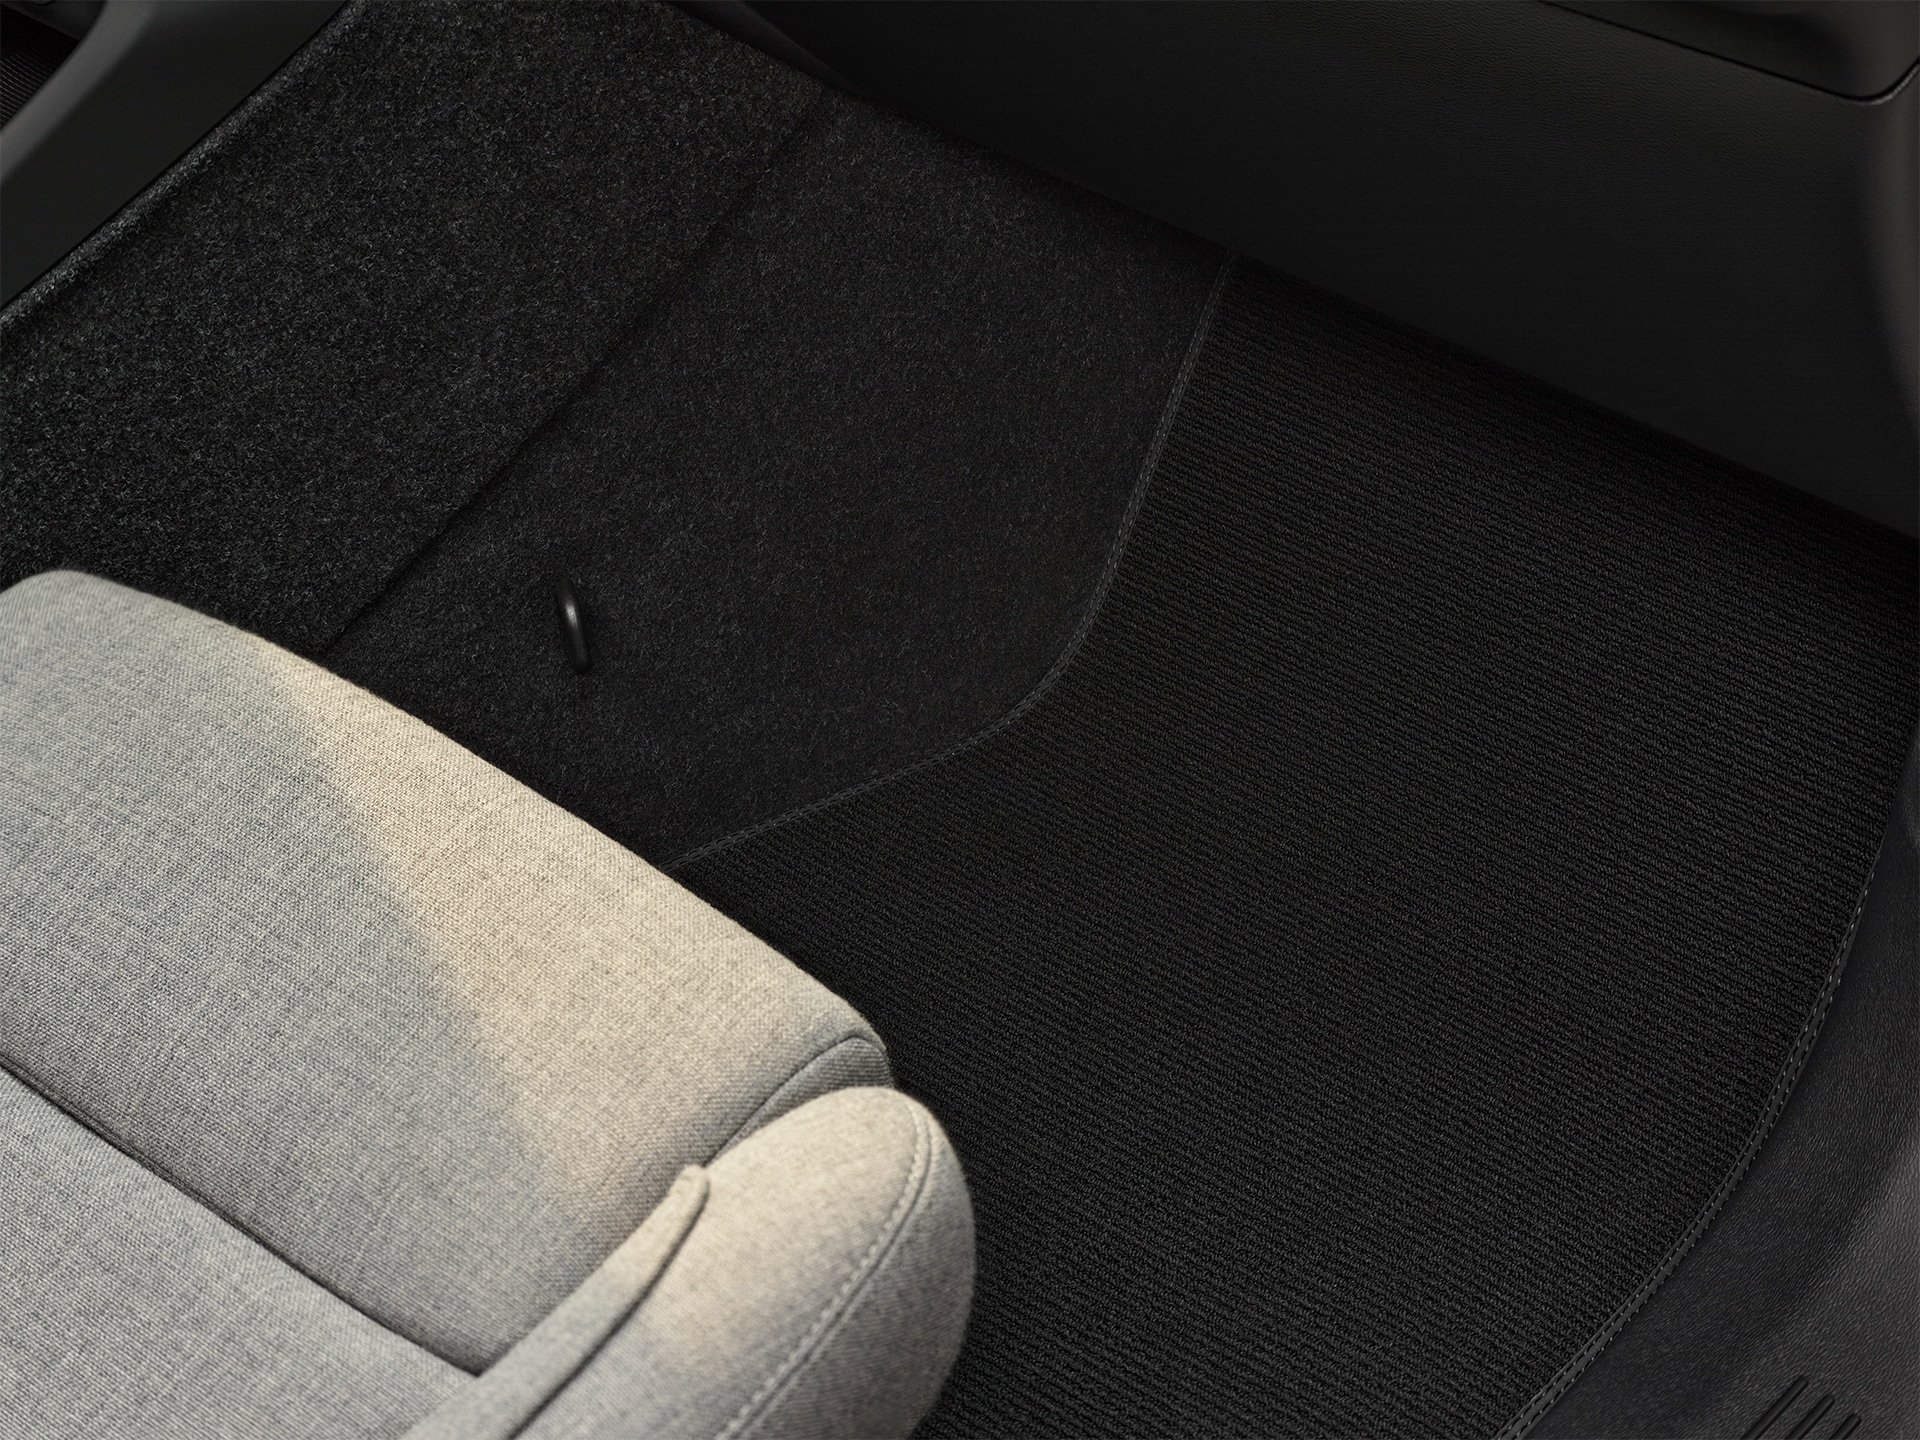 Intérieur confortable, raffiné et polyvalent du Volvo XC40 Recharge hybride rechargeable.